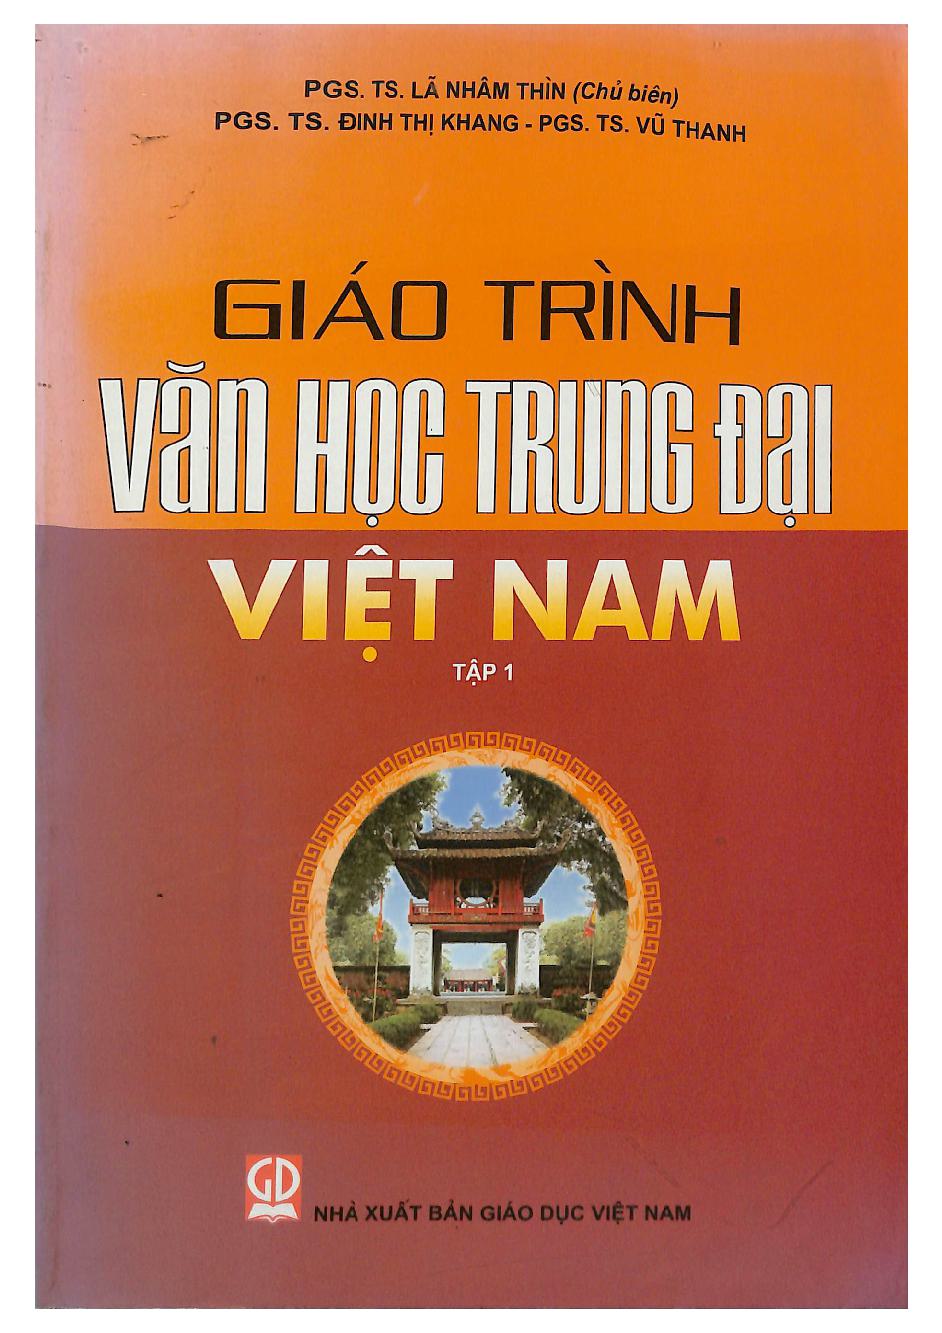 Giáo trình văn học trung đại Việt Nam T.1